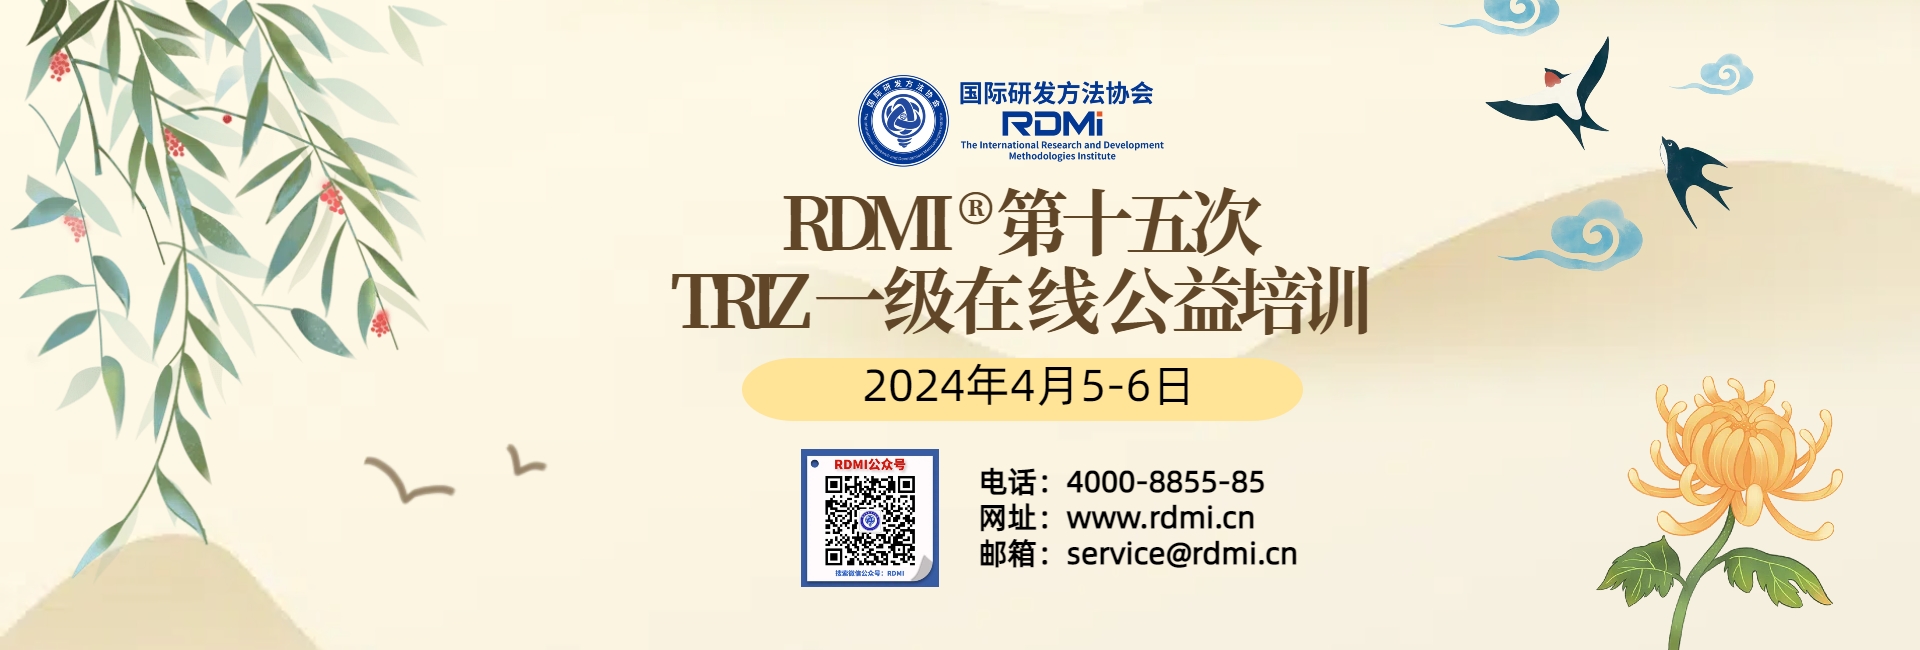 RDMI®第十五次TRIZ一级在线公益培训